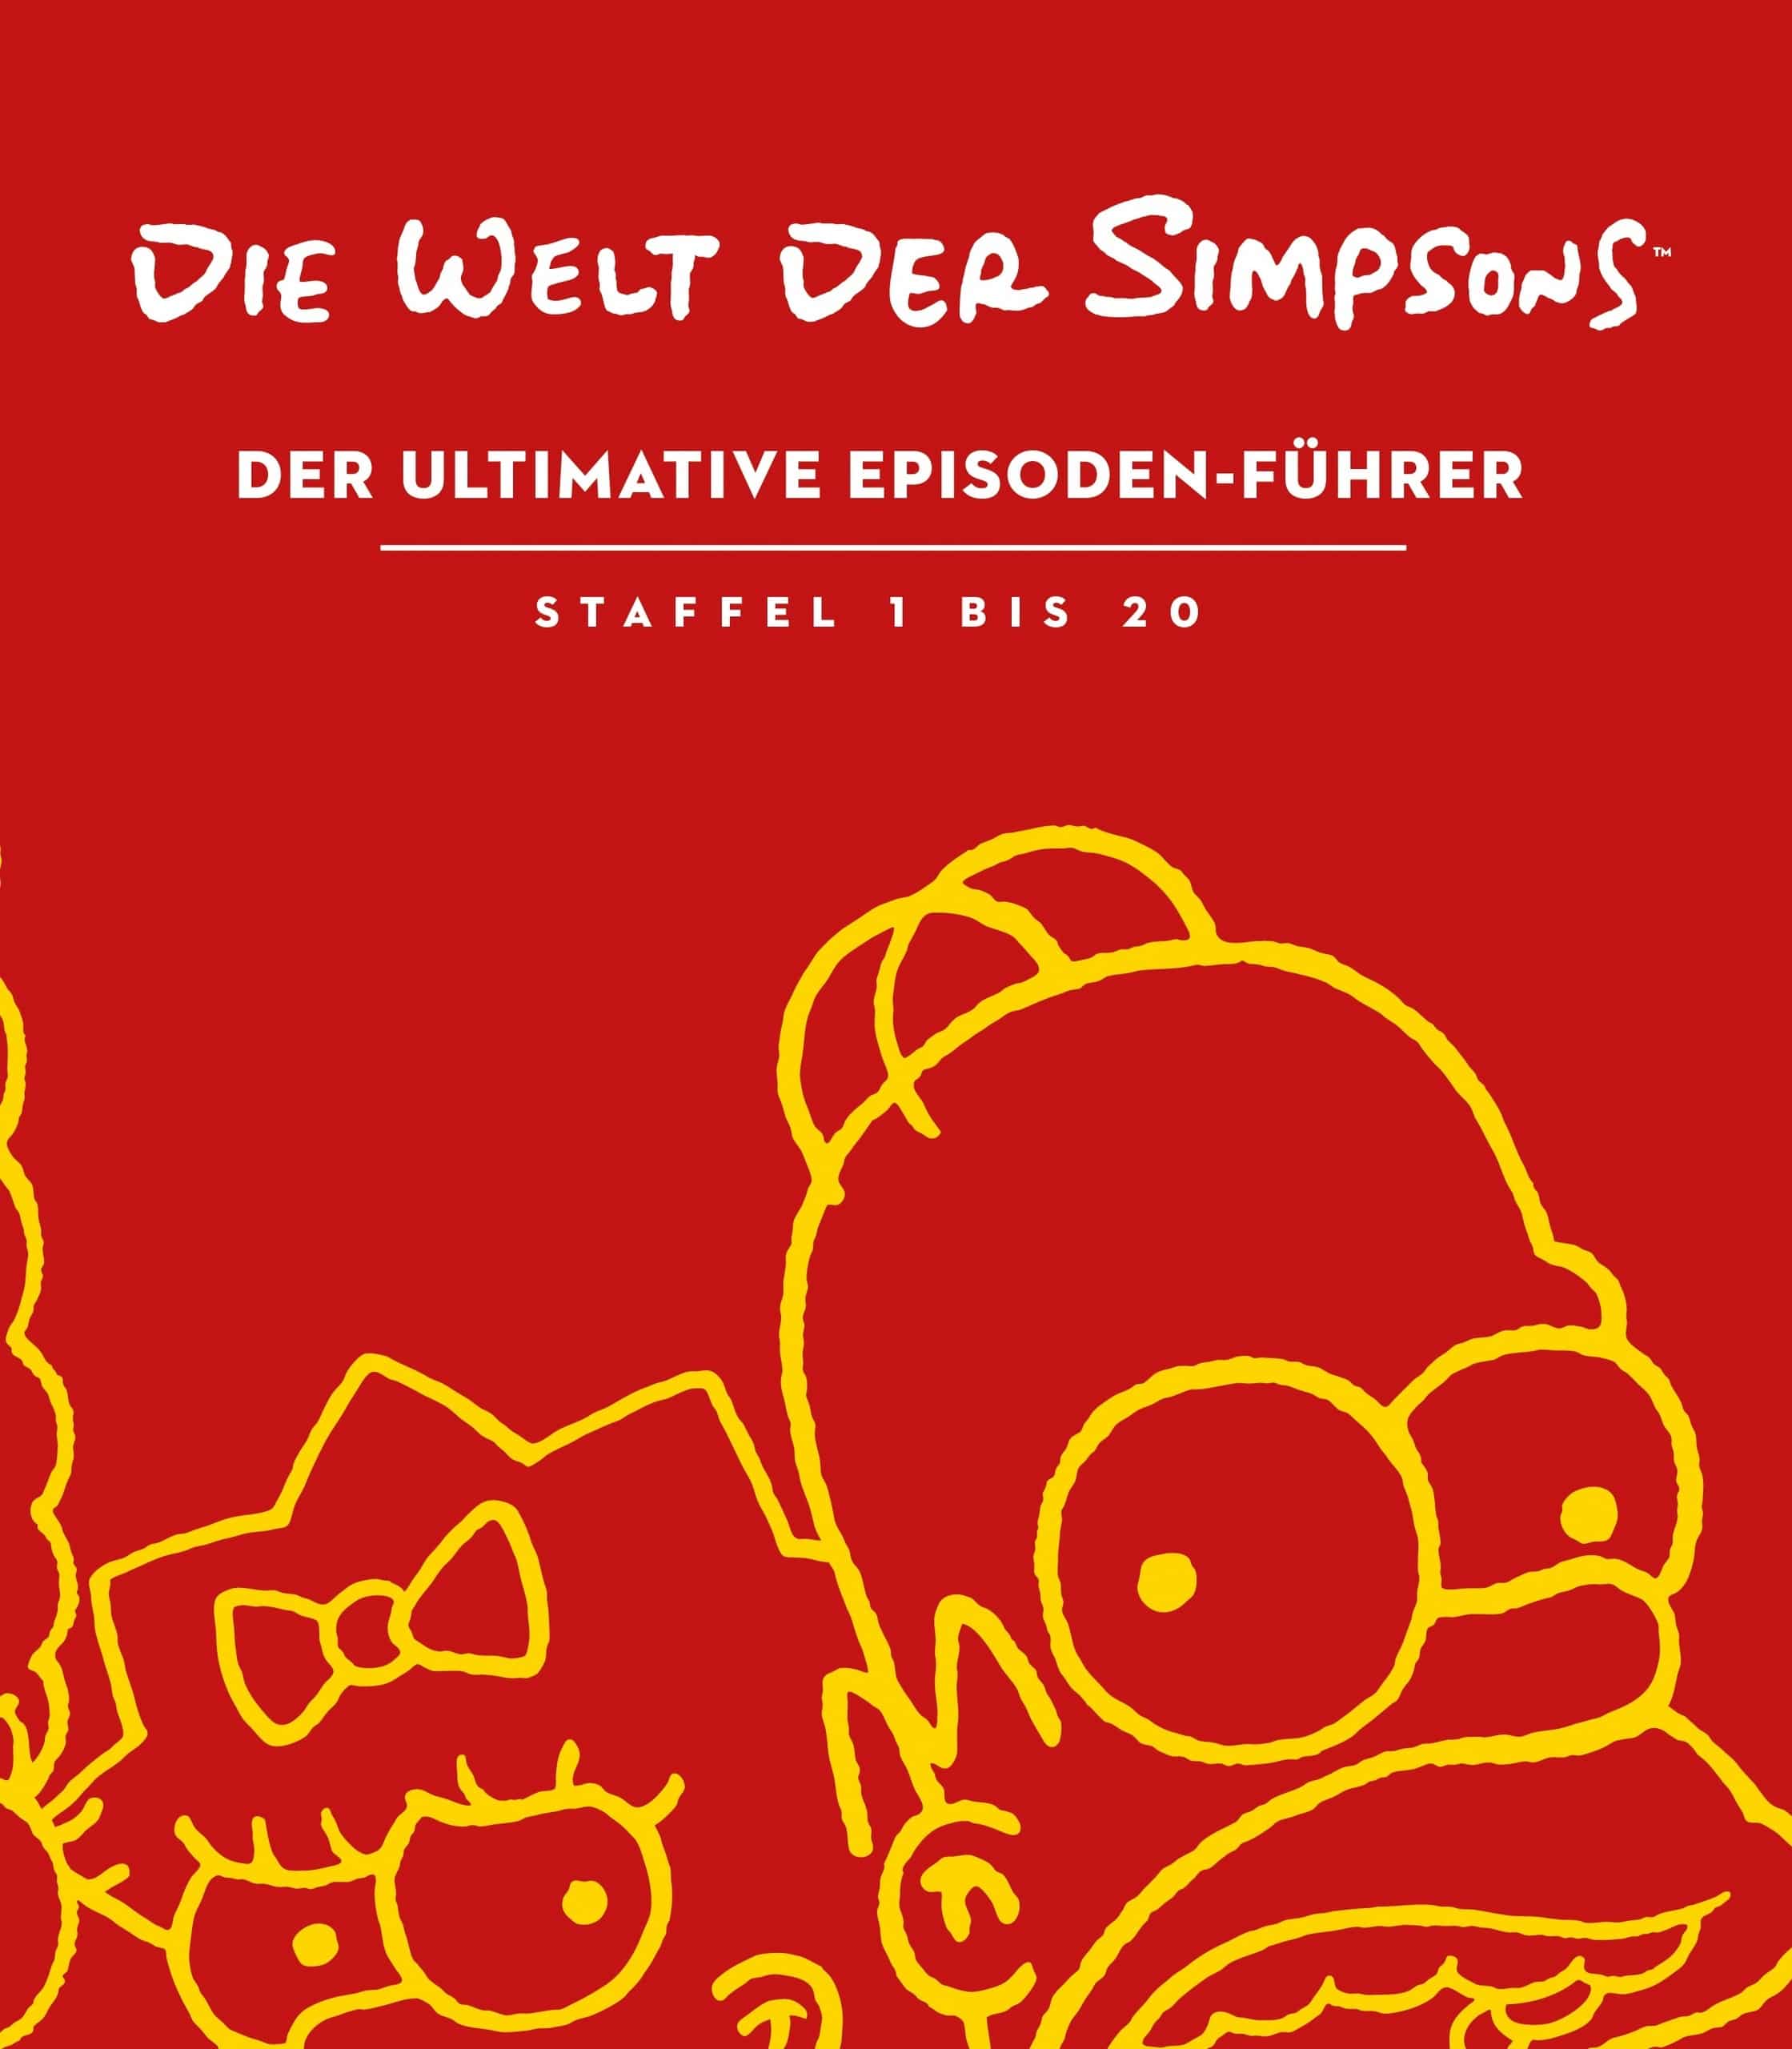 Die Welt der Simpsons – Episoden-Führer bestellen